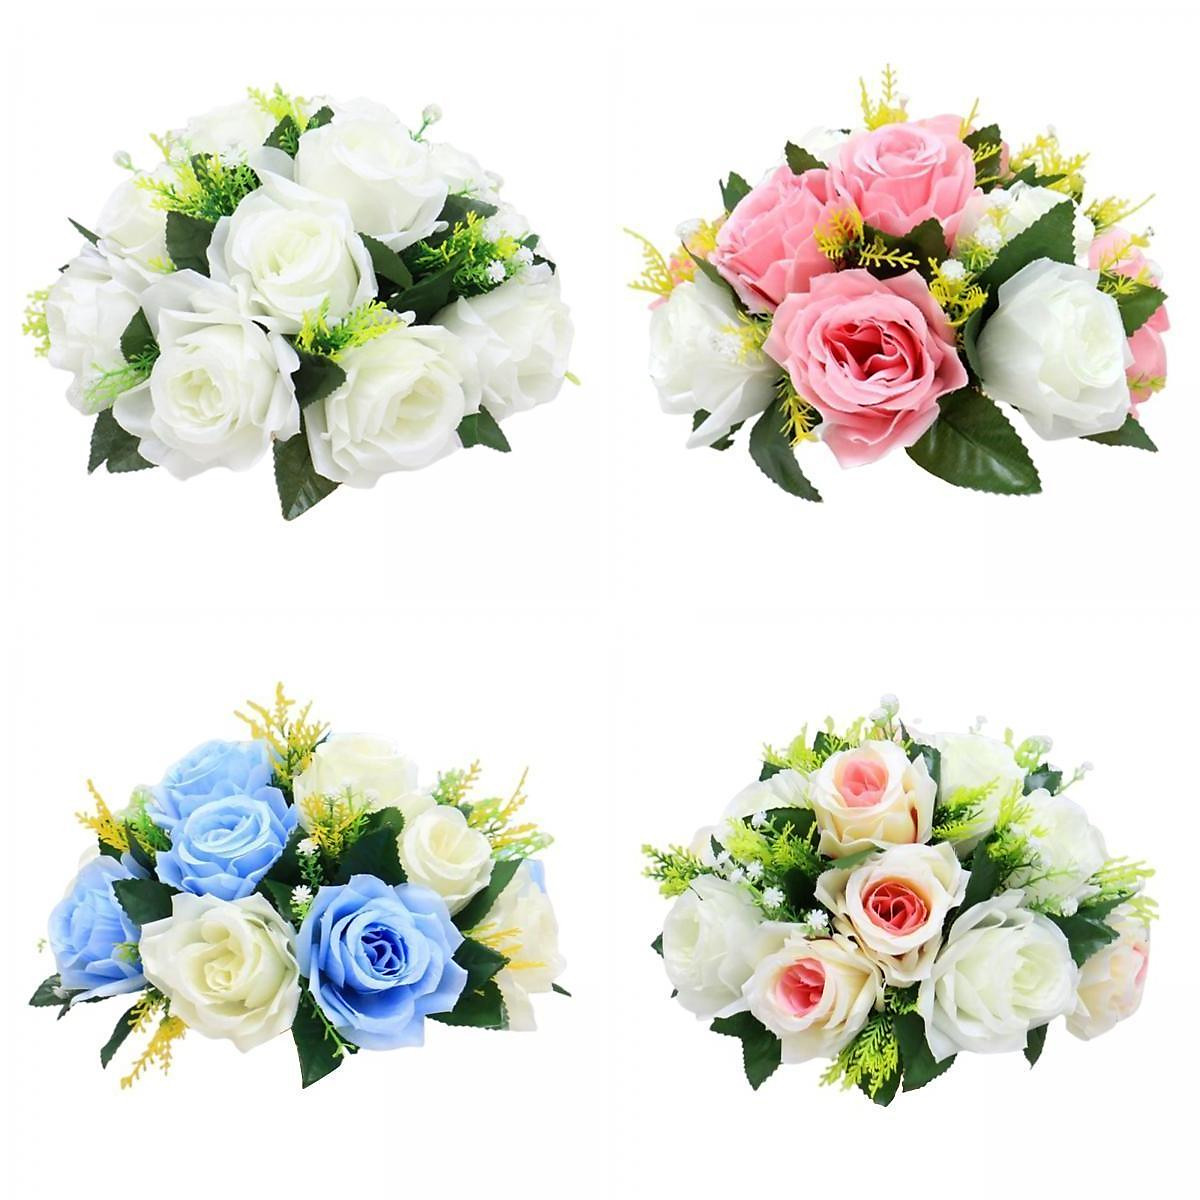 4 Pieces Realistic Artificial Rose Flowers Wedding Bouquet Decor multi color